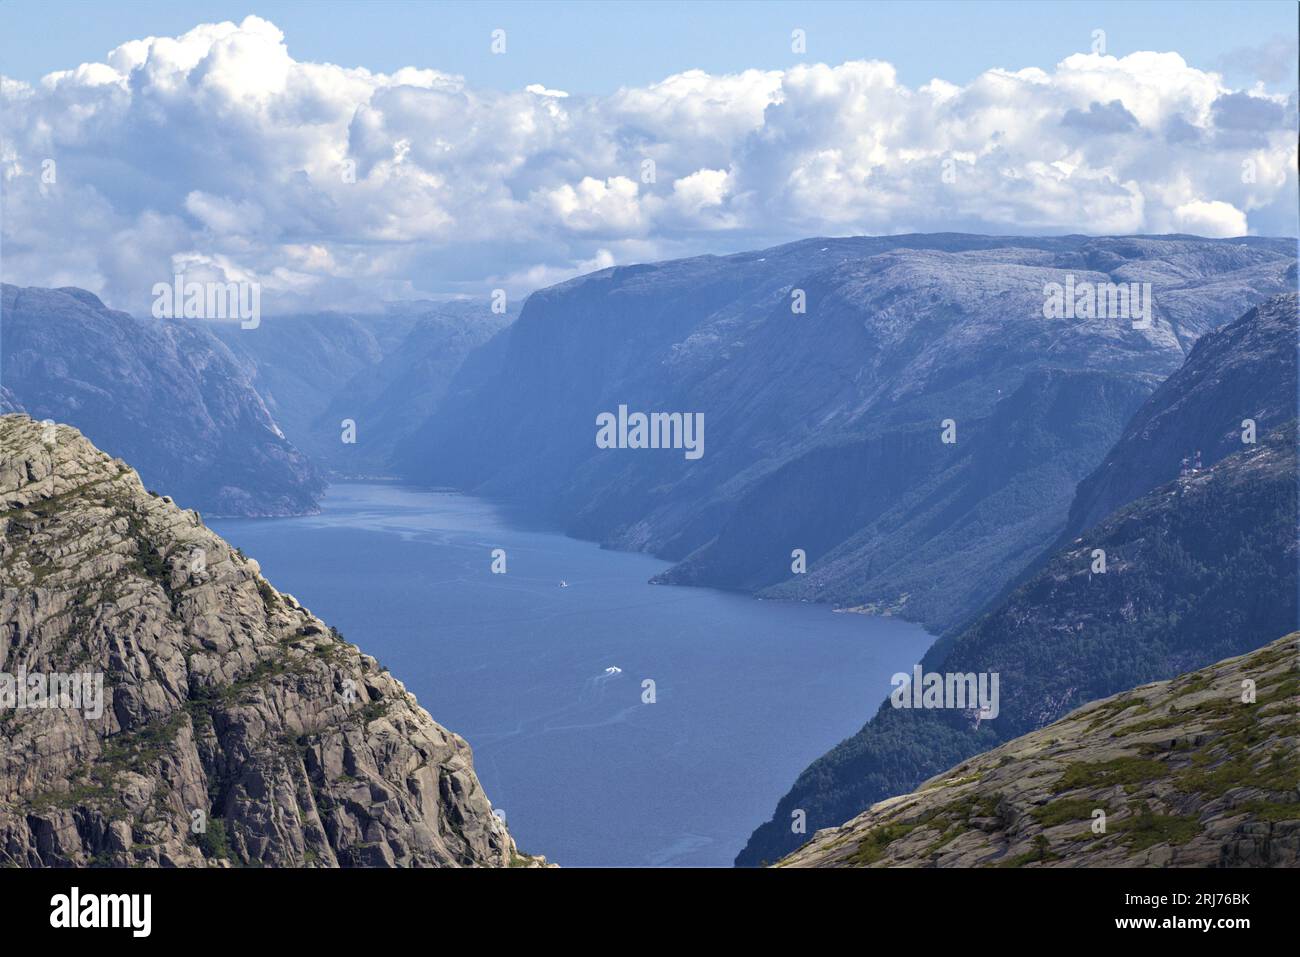 Begeben Sie sich auf ein unvergessliches norwegisches Abenteuer in der Nähe von Stavanger, wo hoch aufragende Berge auf dieser fesselnden Wanderung über einen gewundenen Fjord wachen. Stockfoto